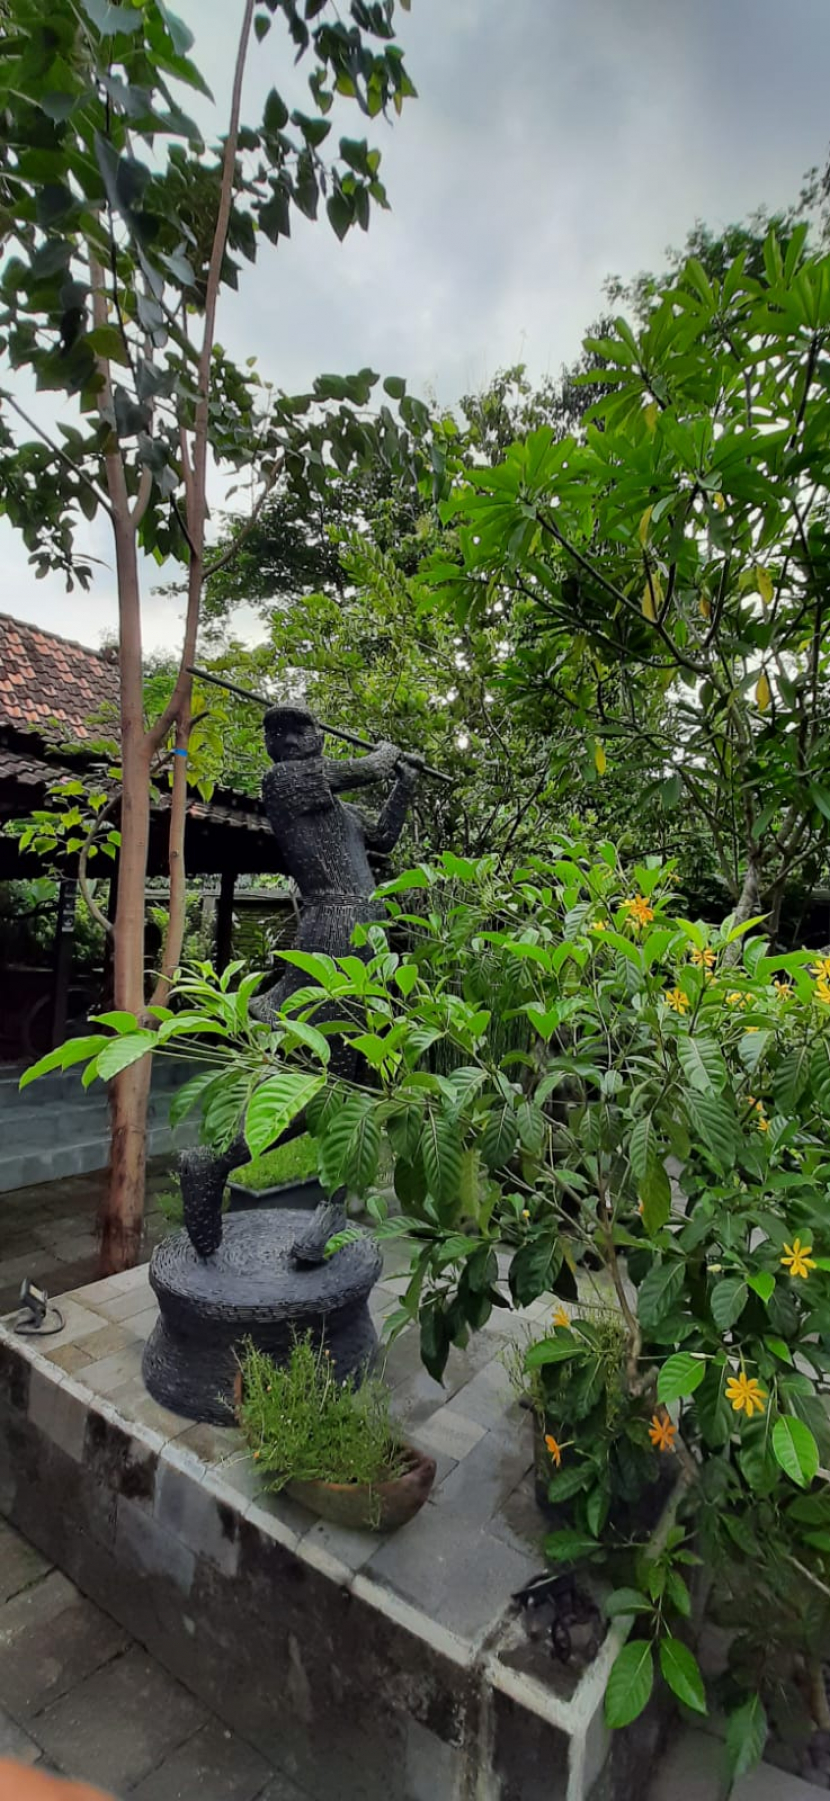 Salah satu patung yang ada di Candi Tirto Raharjo, Kasongan, Yogyakarta.